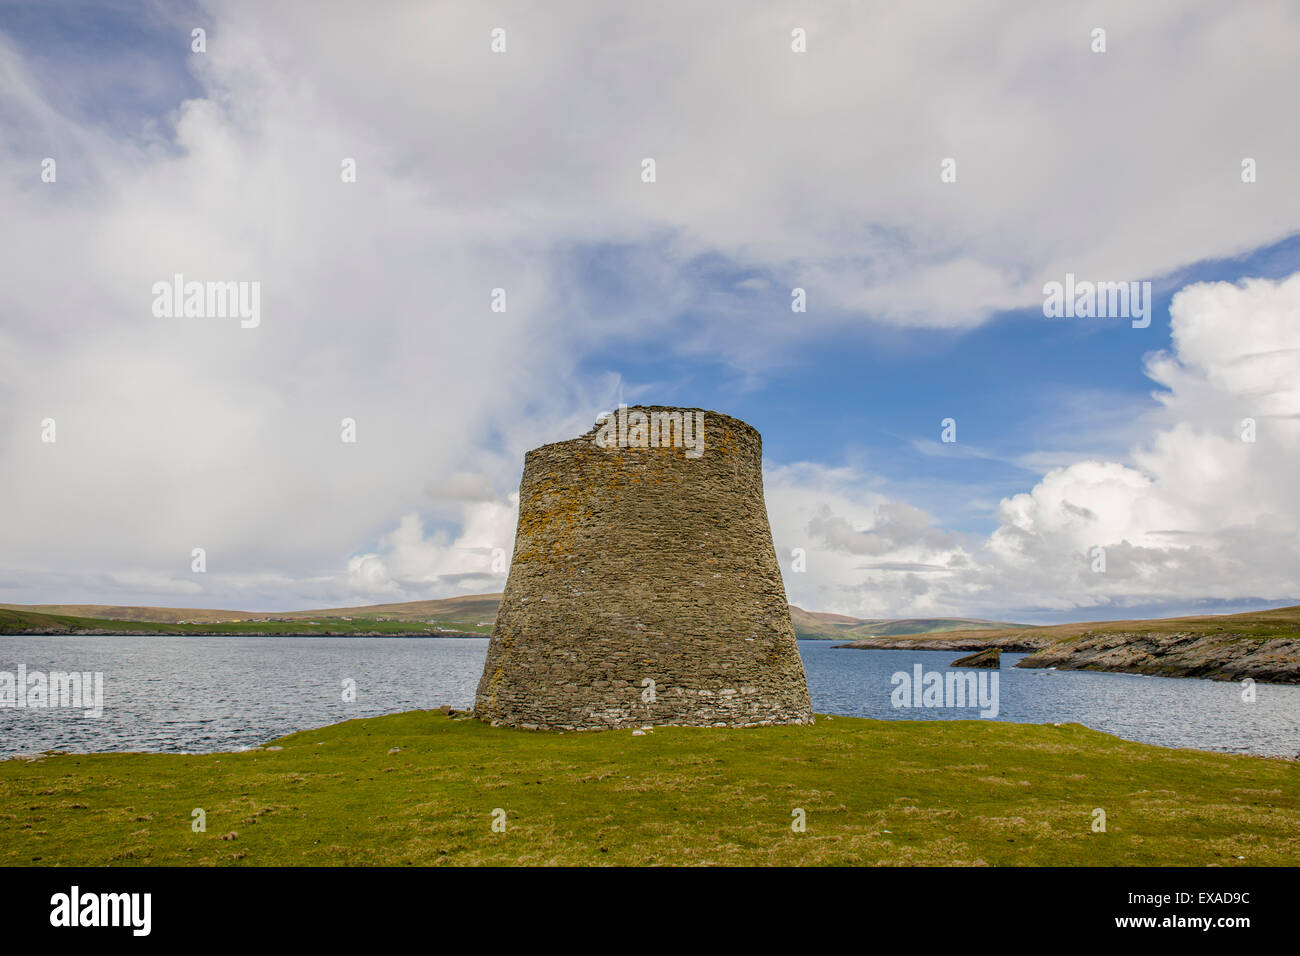 La maggior parte ben conservata torre Pictish dall'età del ferro, circa duemila anni, isola di Mousa, isole Shetland, Scozia Foto Stock